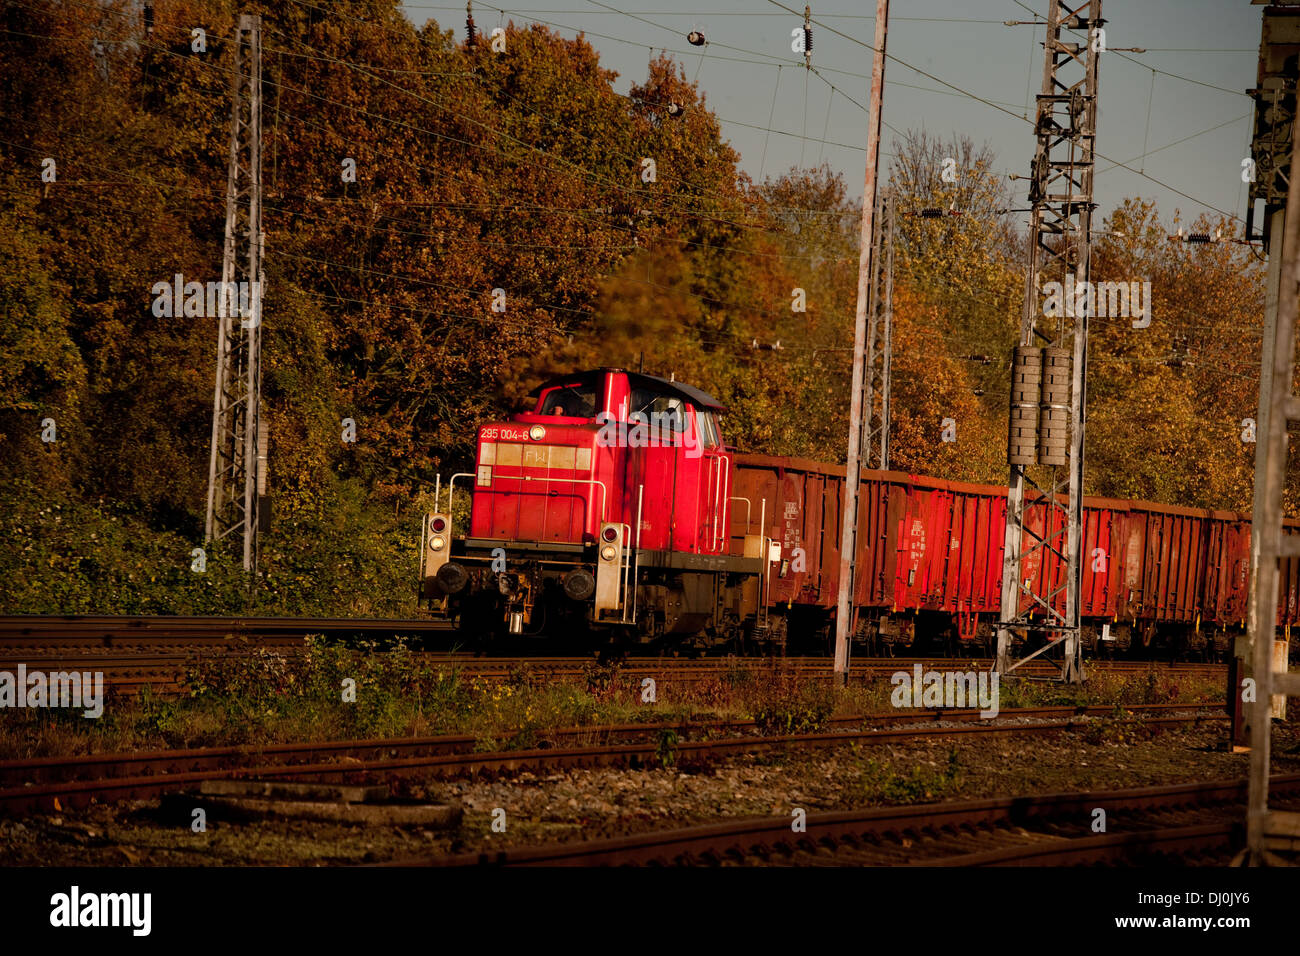 BR295 295 004-6 der DB Mit einem Güterzug auf der KBS385 (KM 124 2) durchquert den Betriebs-bf Osnabrück-Hörne (nov. 2013) Foto Stock